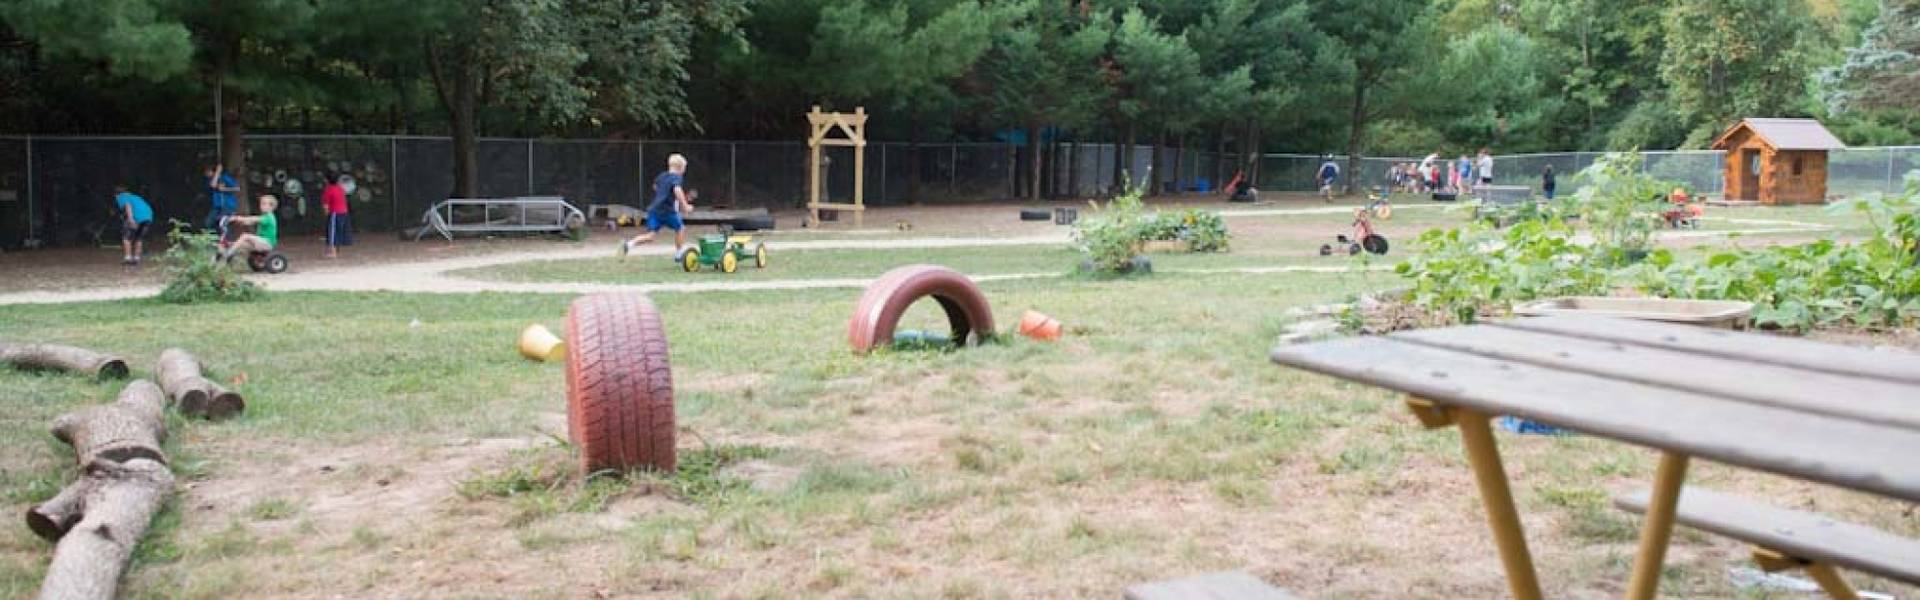 Children's Nature Academy Playground